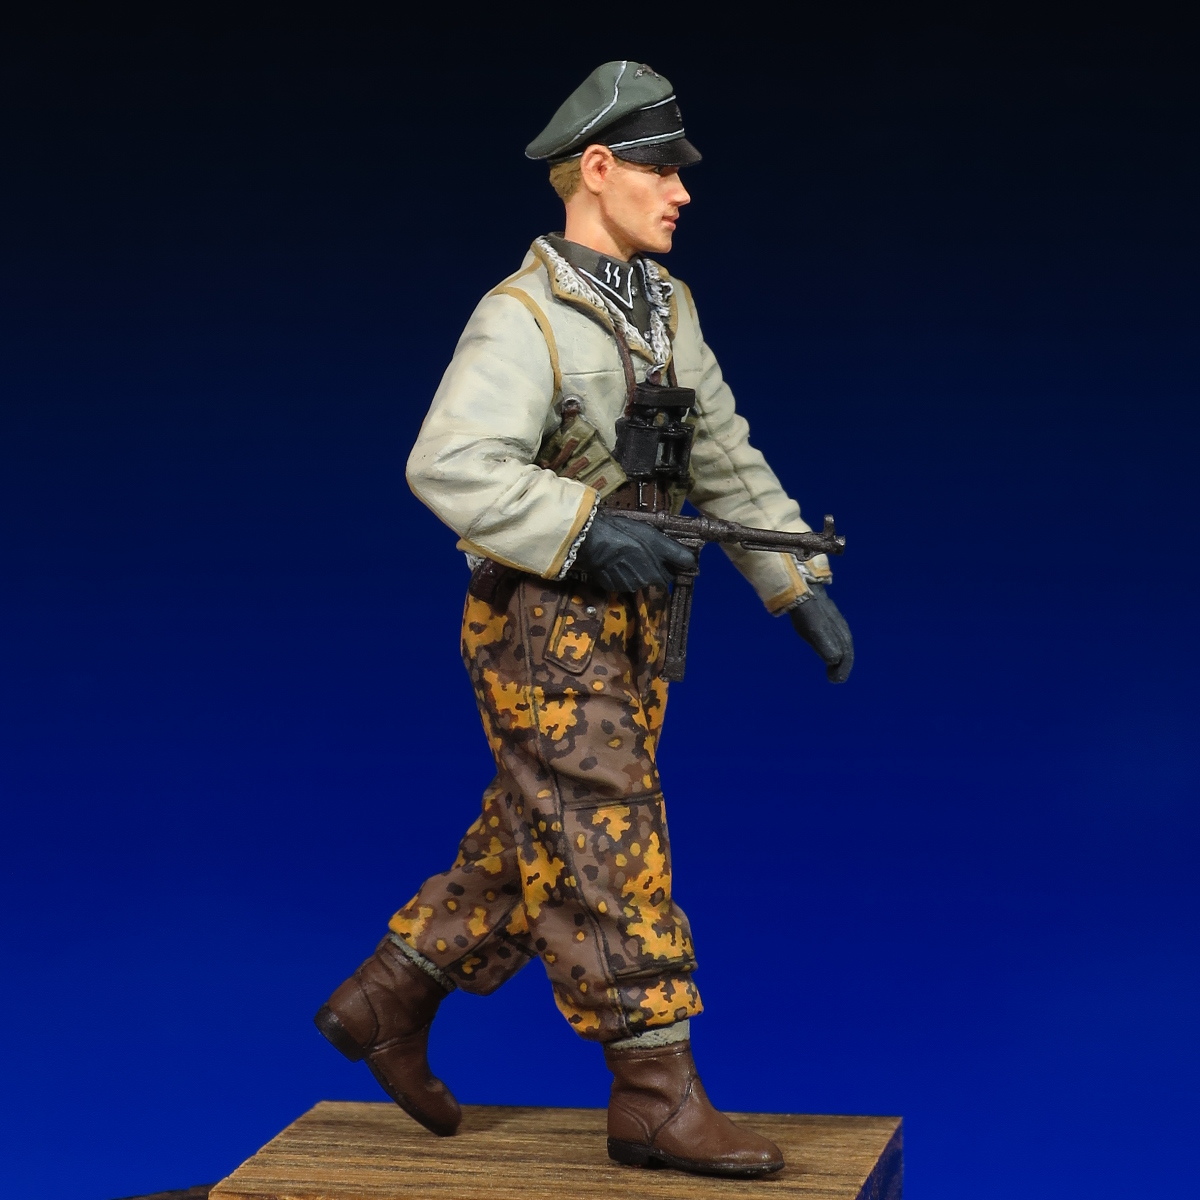 [118] 完成品 1/35 フィギュア WW2 ドイツ兵 ドイツ軍 武装親衛隊 下士官 東部戦線 冬季 Painted and Built  Figure 50mm